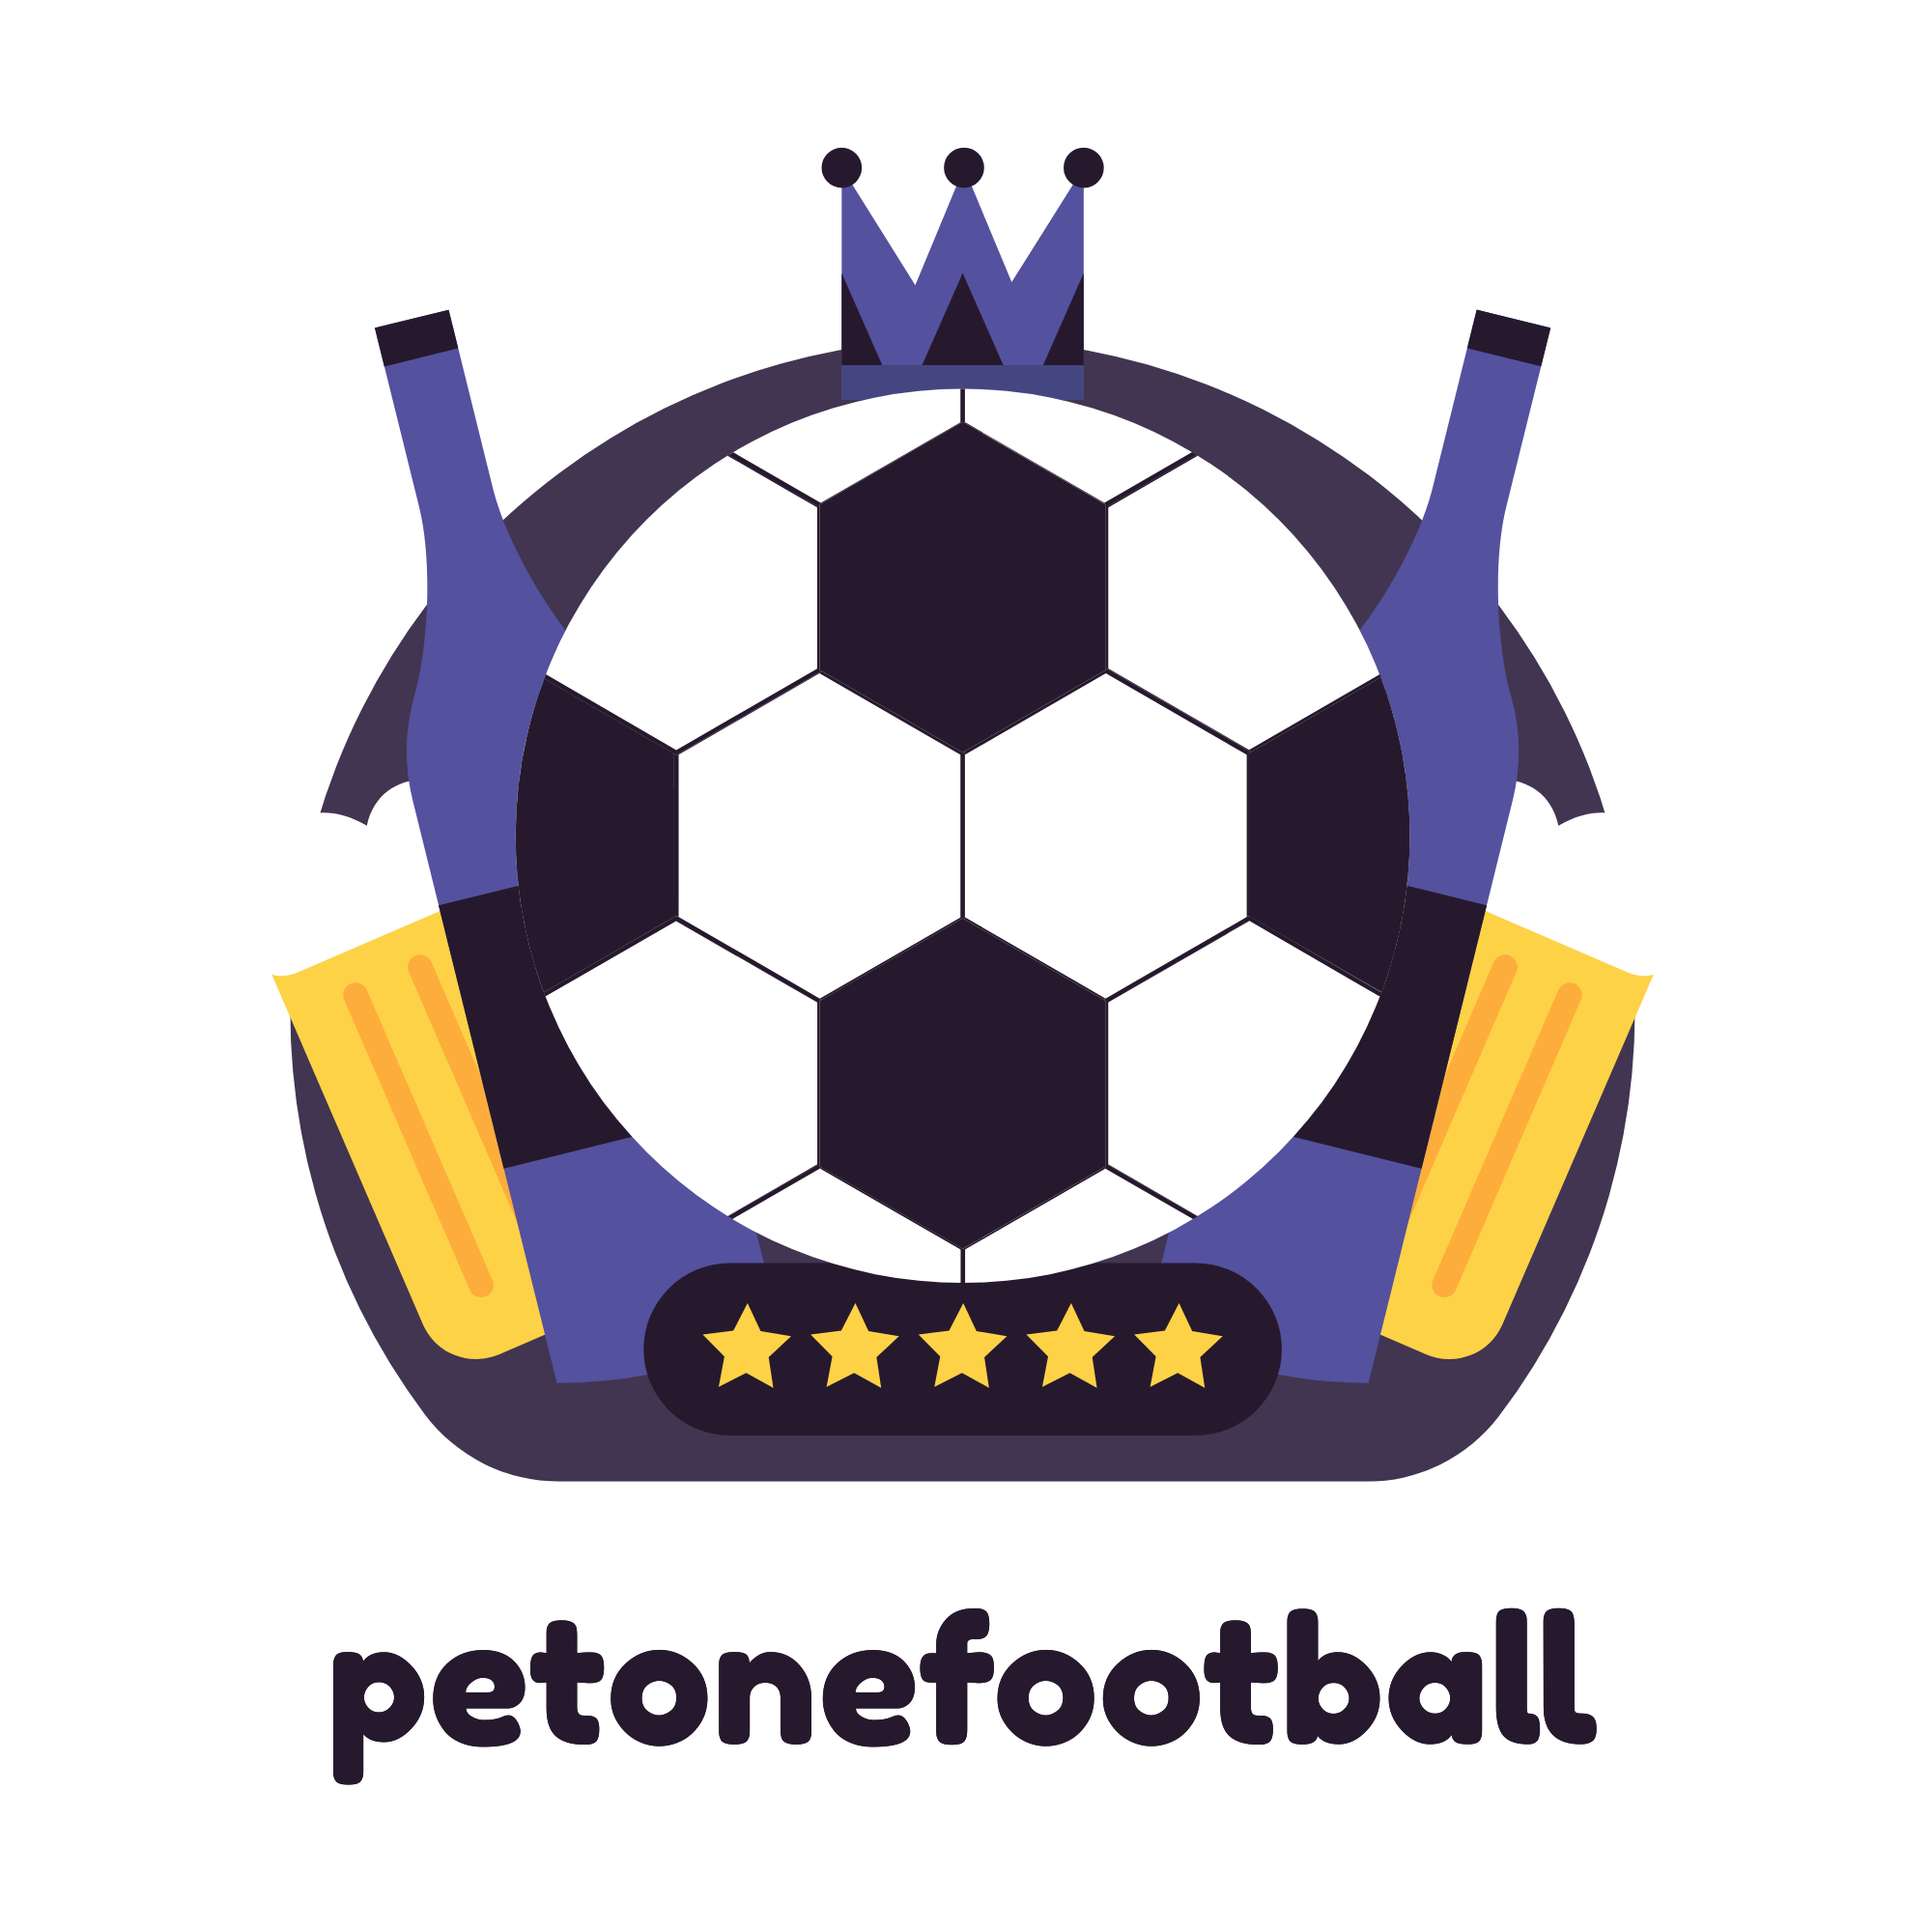 Petonefootball